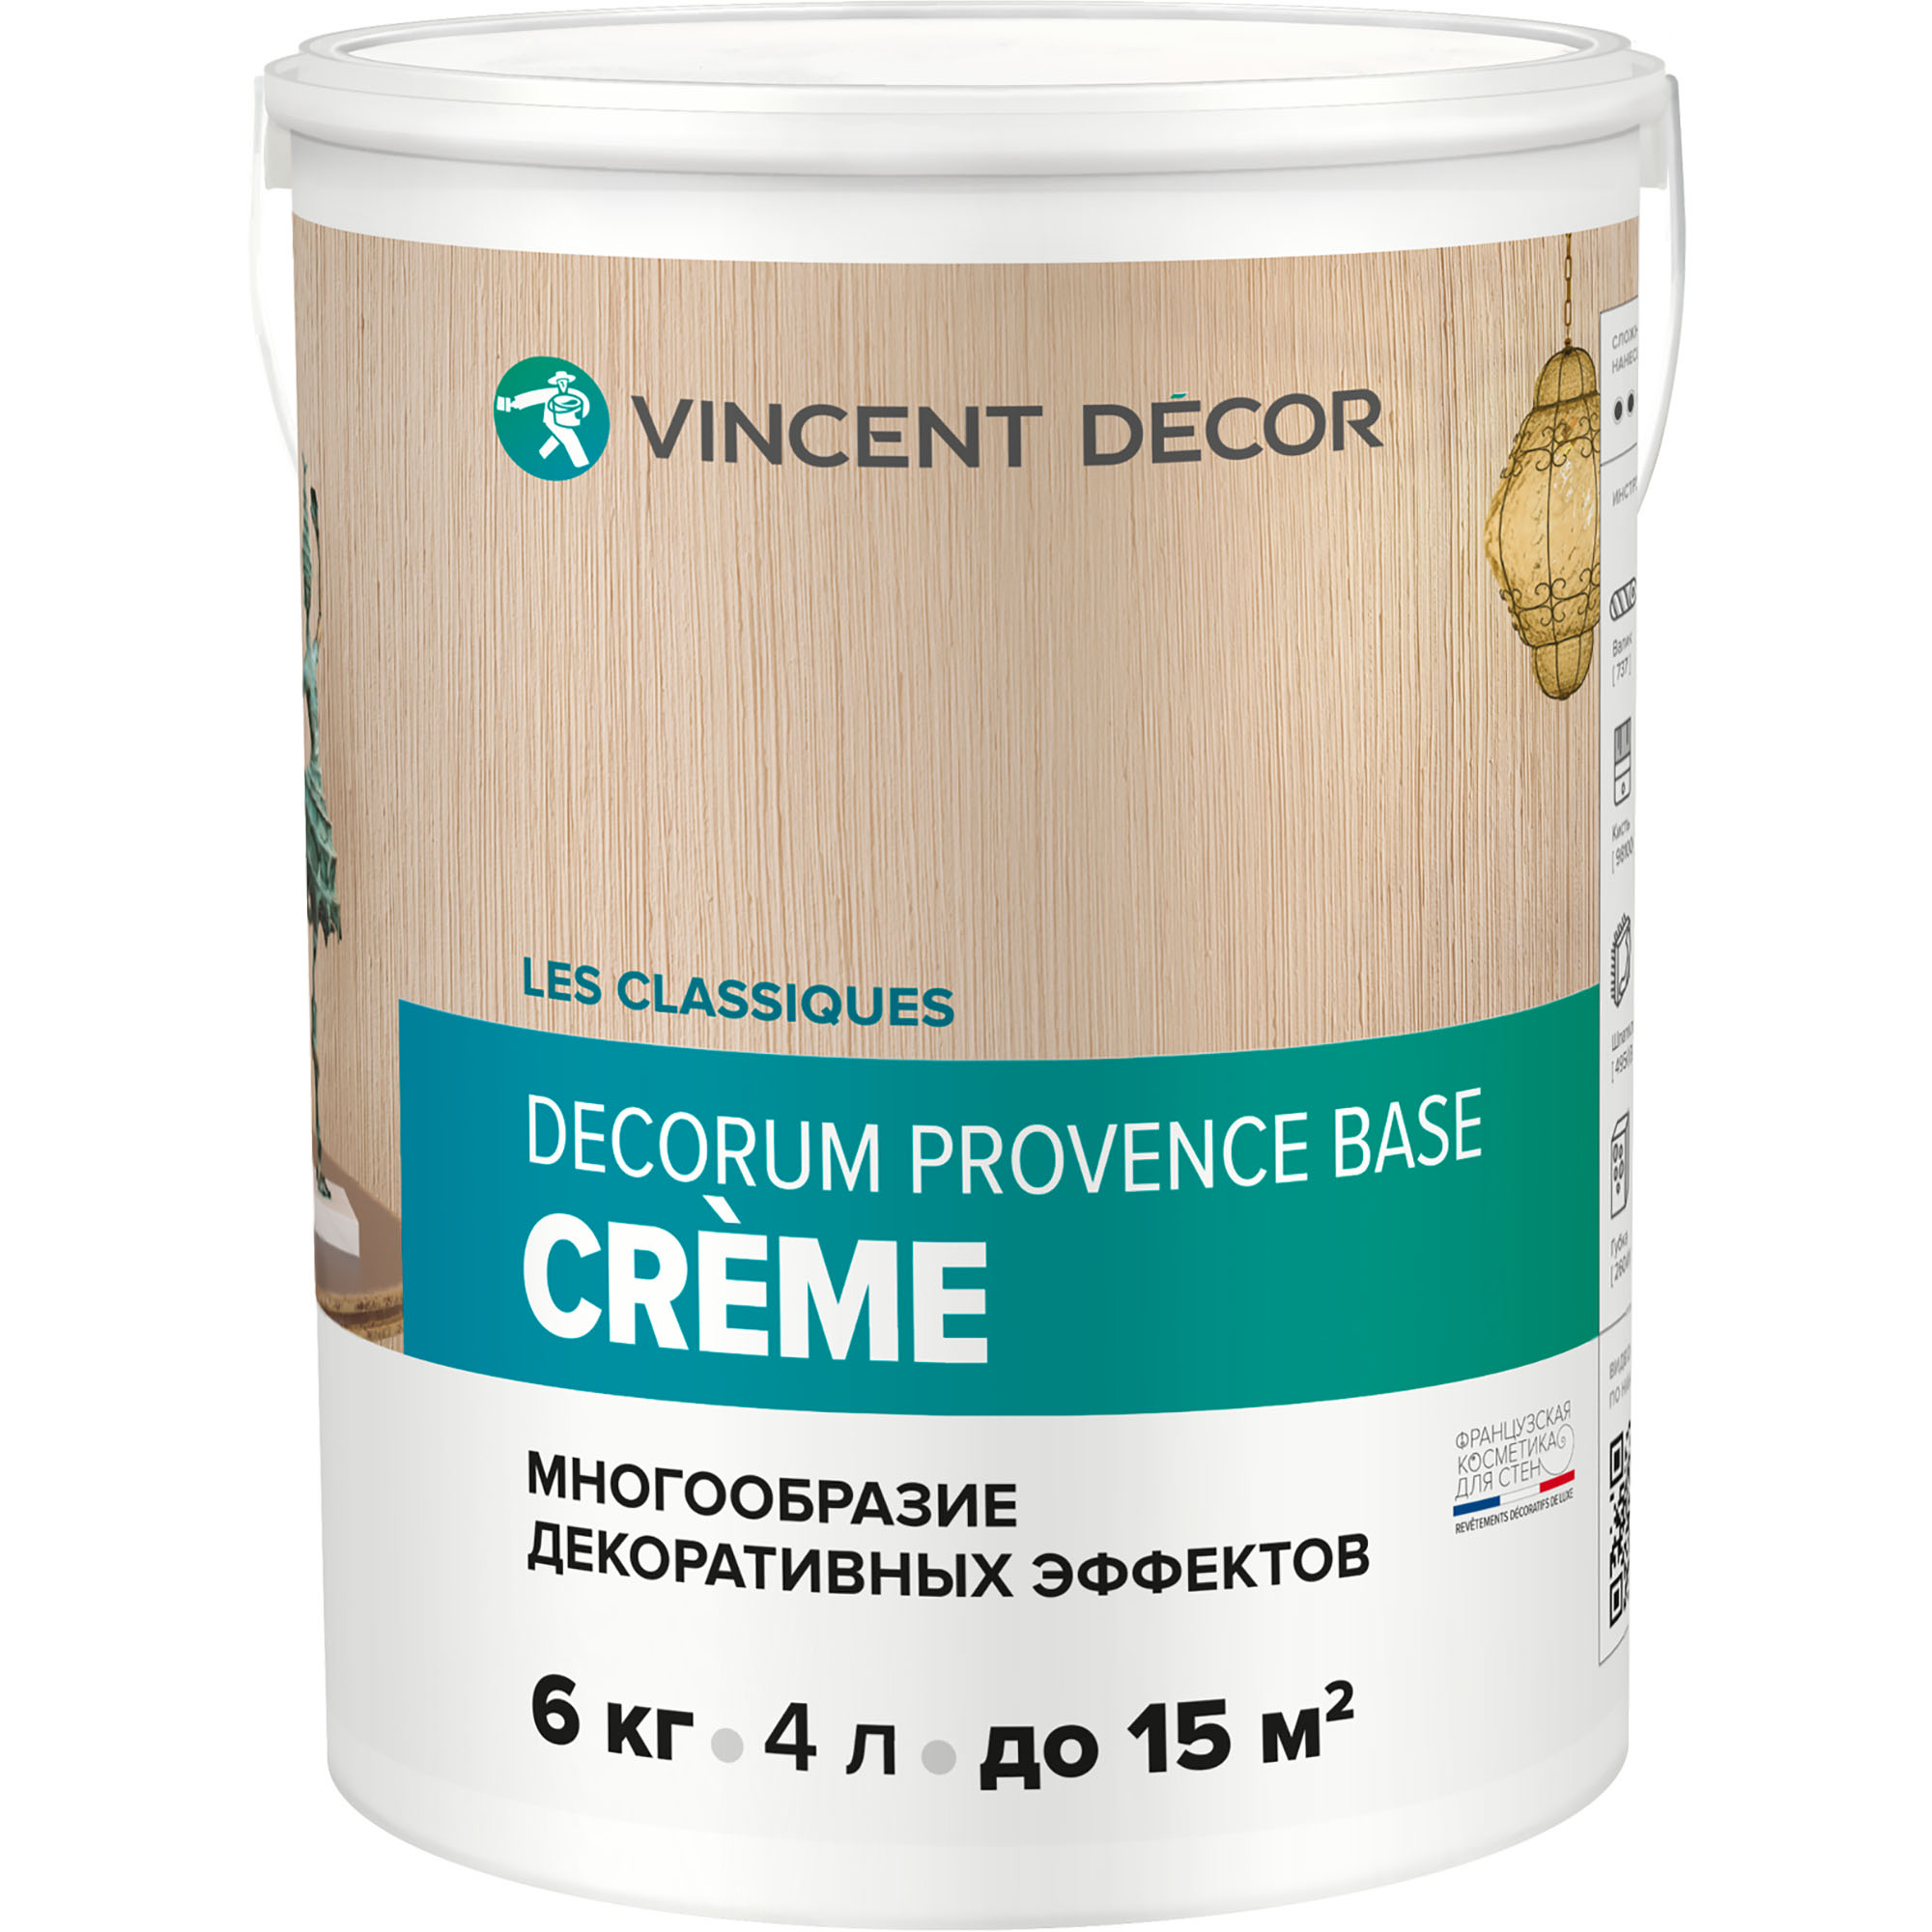 Декоративное покрытие Vincent Decor Decorum Provence Crema многообразные декоративные эффекты 6 кг грунтовка для декоративных покрытий vincent decor sous couсhe 2 5 л